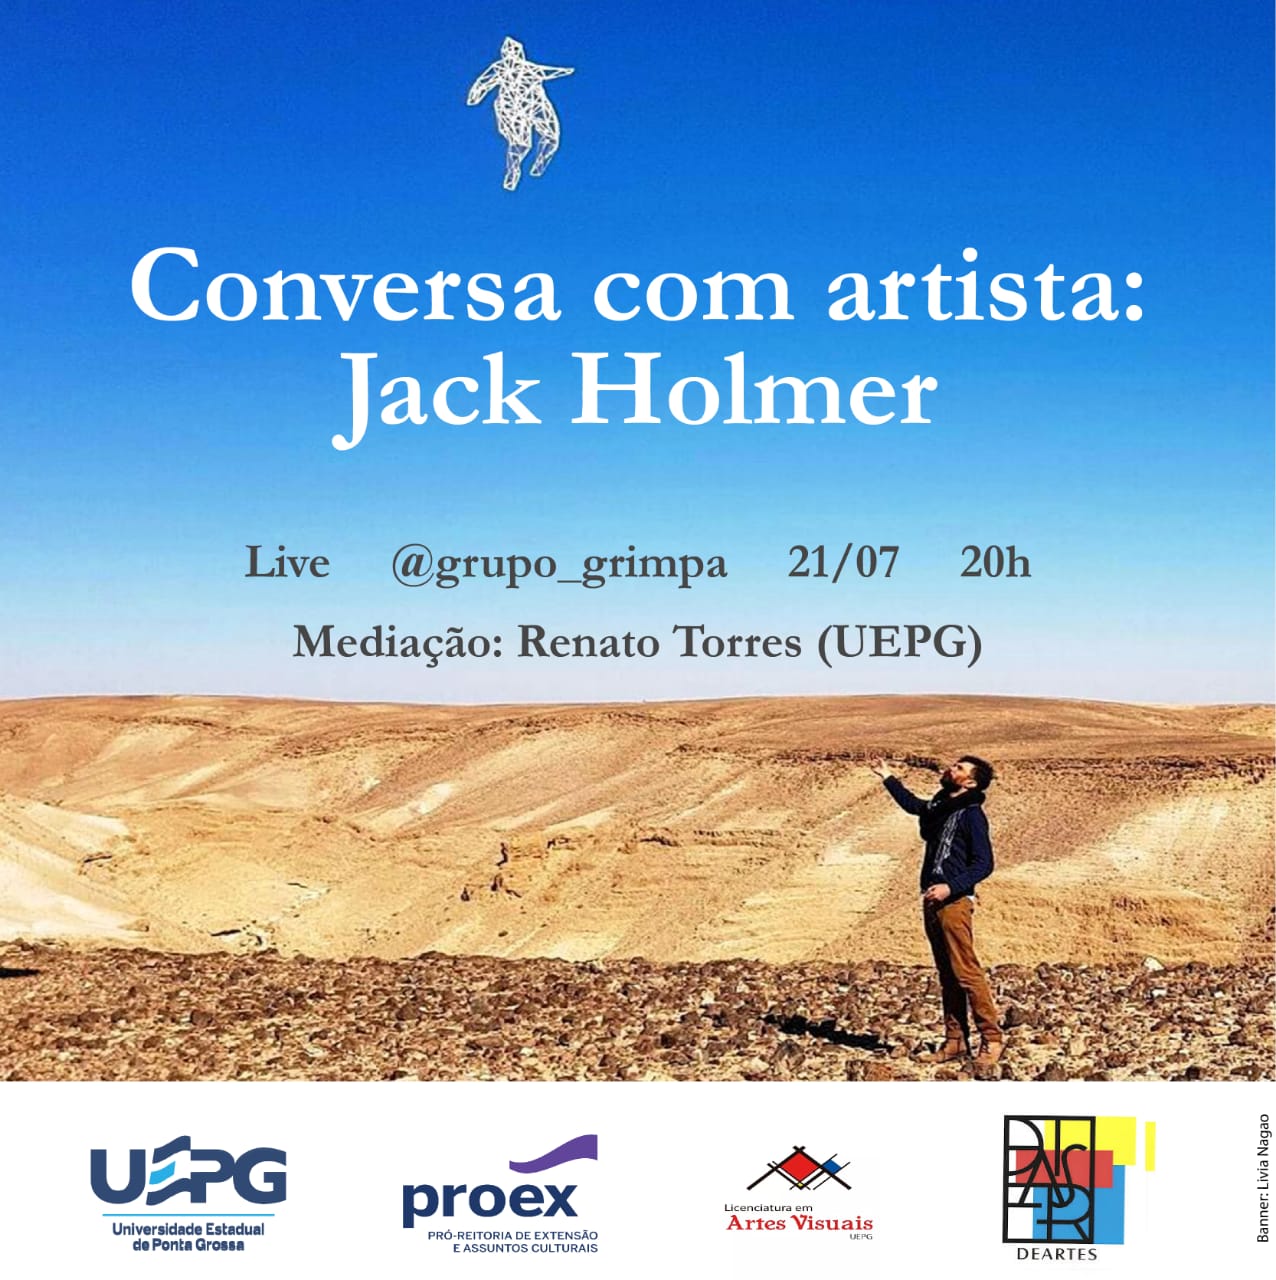 COLETIVO GRIMPA CONVERSARÁ COM O ARTISTA JACK HOLMER SOBRE ARTE E TECNOLOGIA